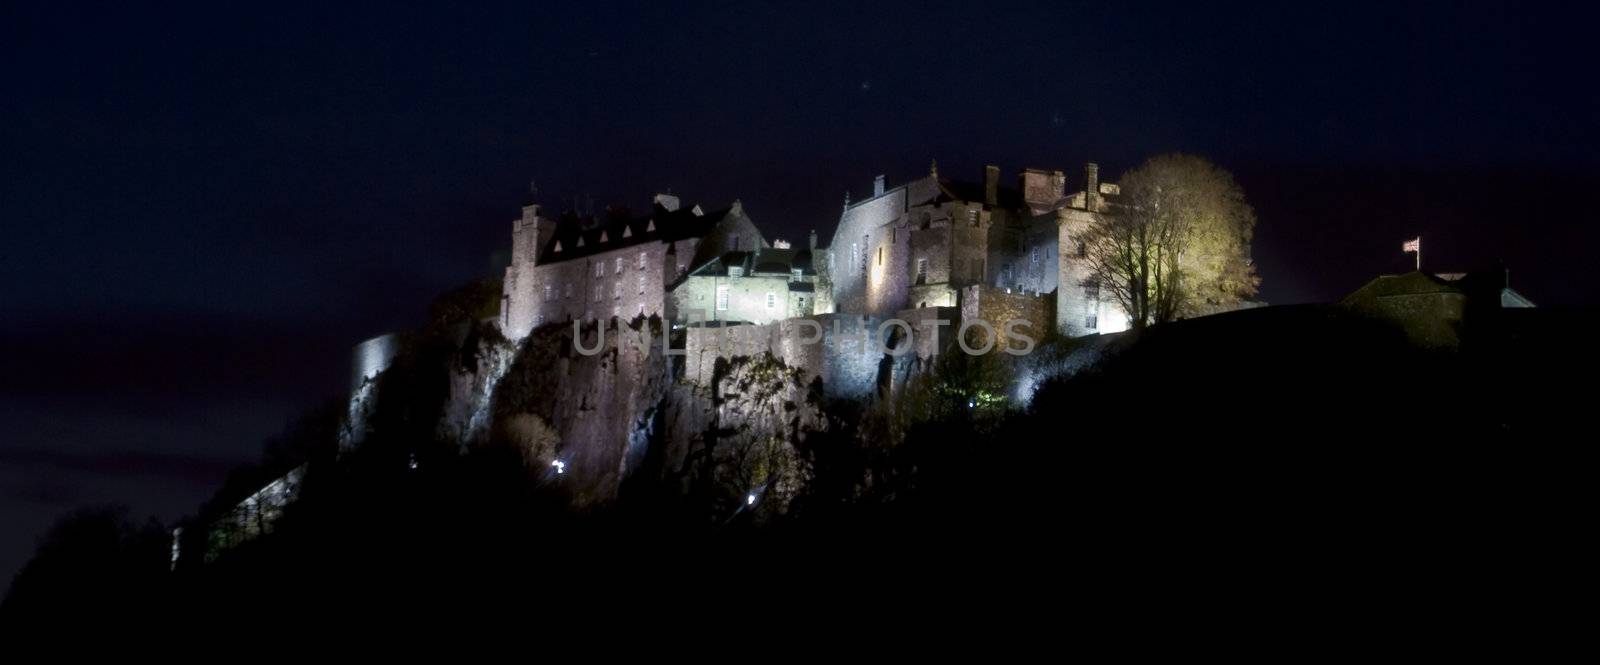 Stirling castle by Jule_Berlin